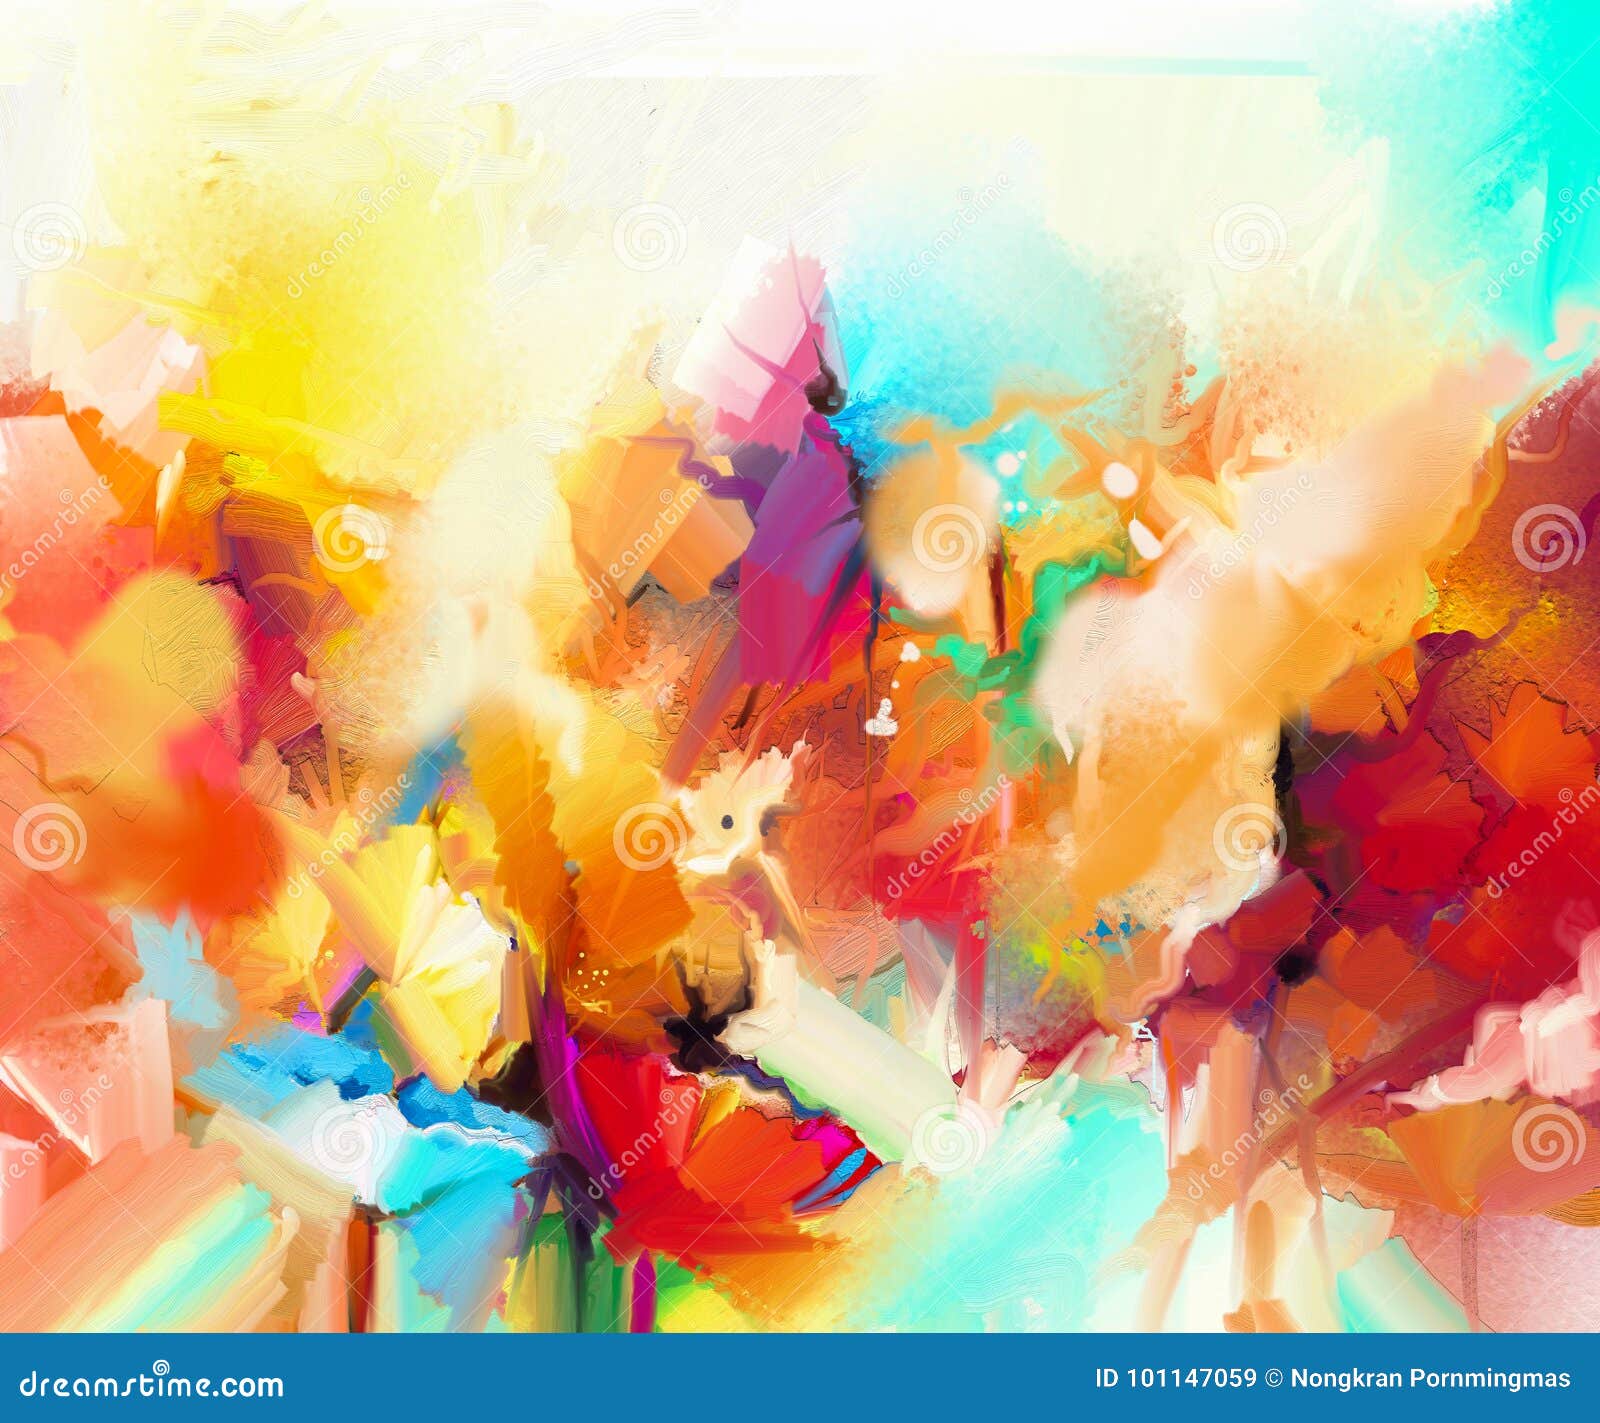 Abstract Kleurrijk Olieverfschilderij Op Canvas Stock Illustratie - of creatief, 101147059